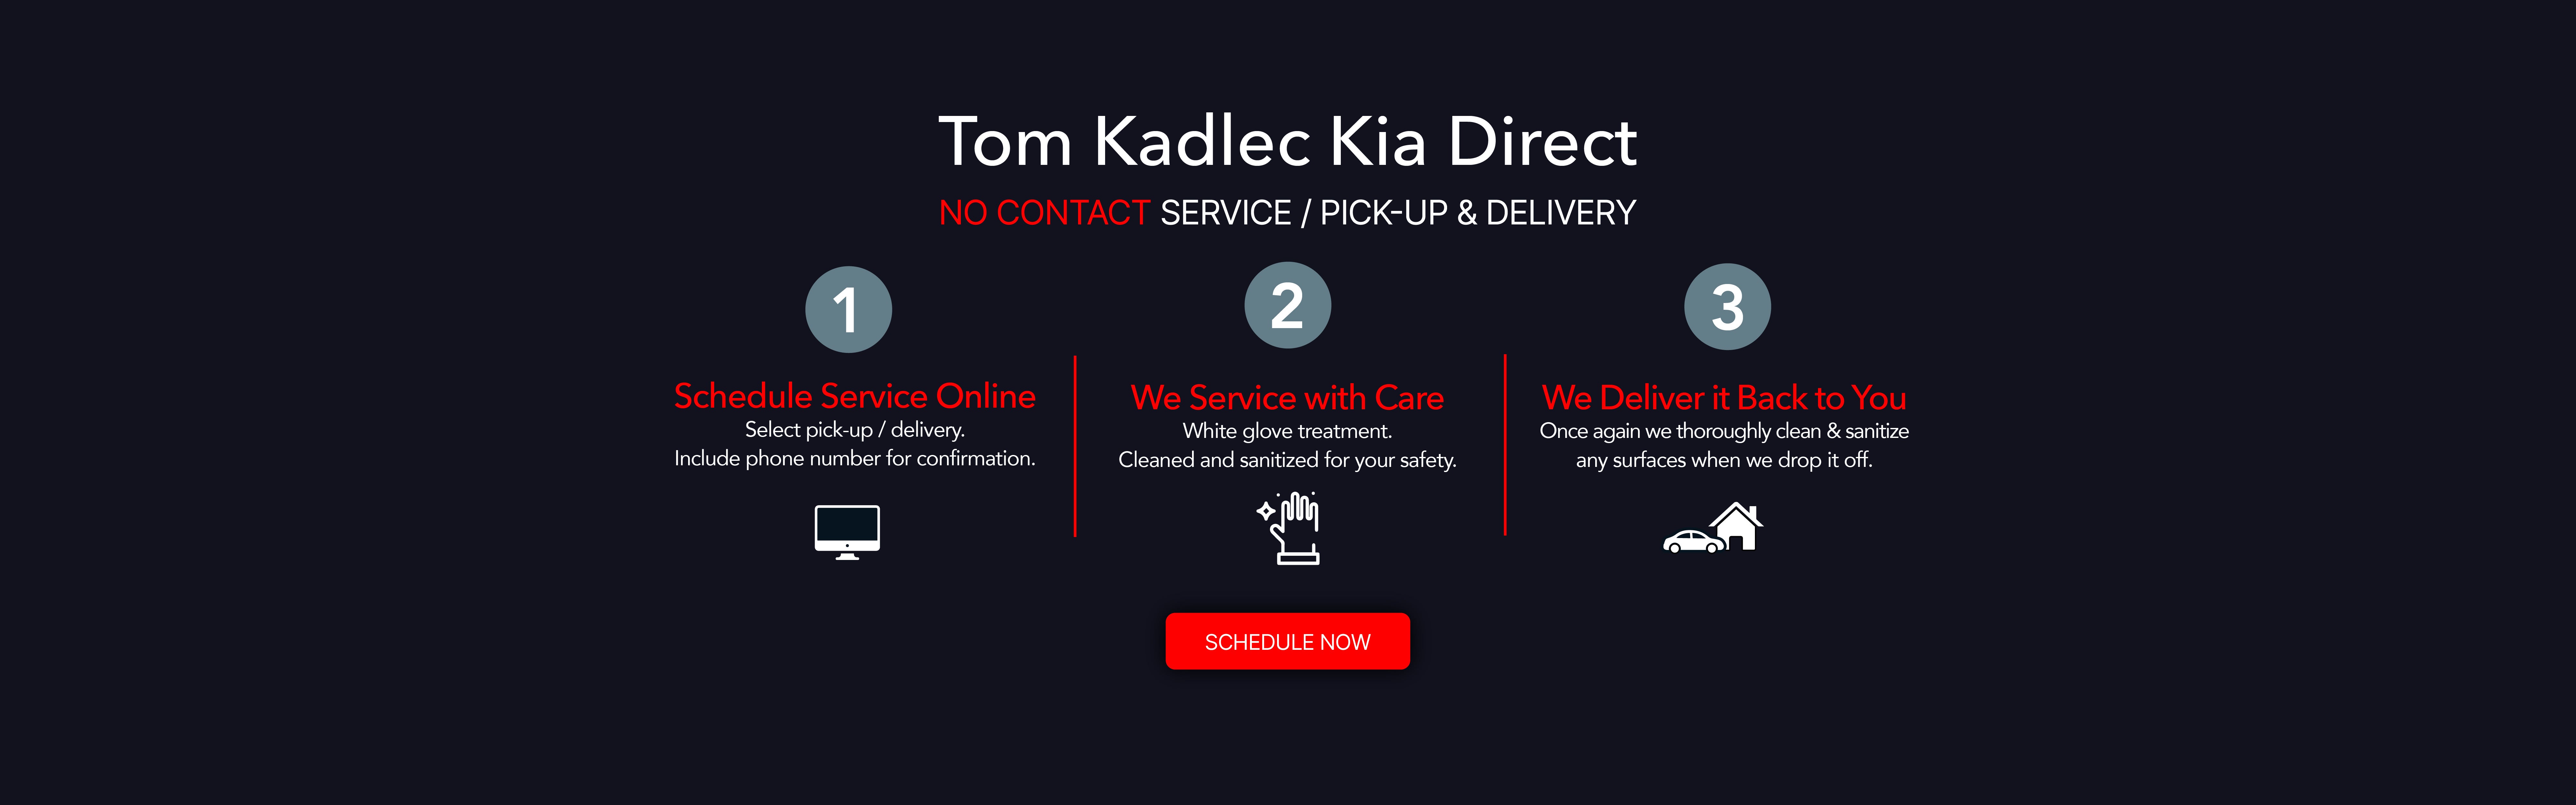 Tom Kadlec Kia Direct